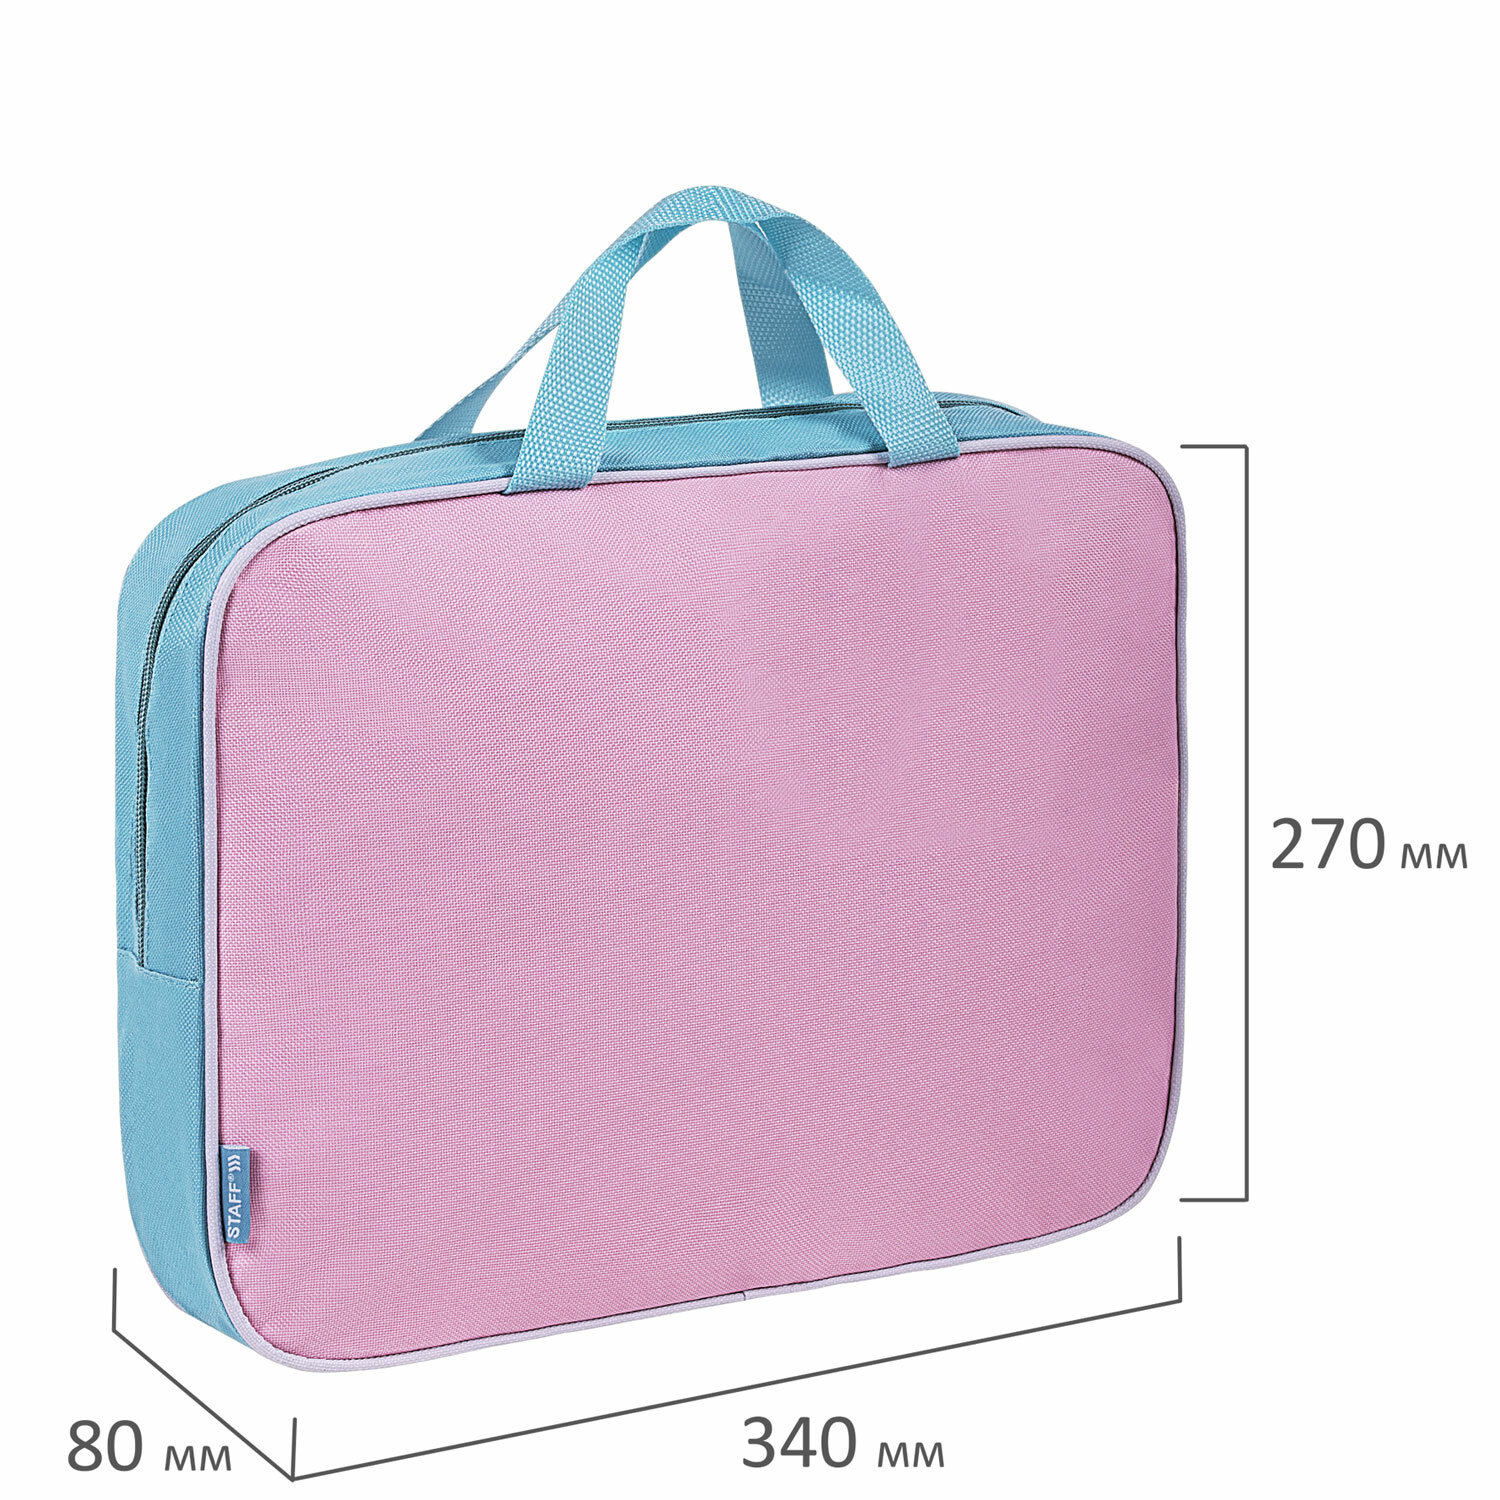 Папка-сумка Staff портфель для документов с ручками на молнии - фото 10